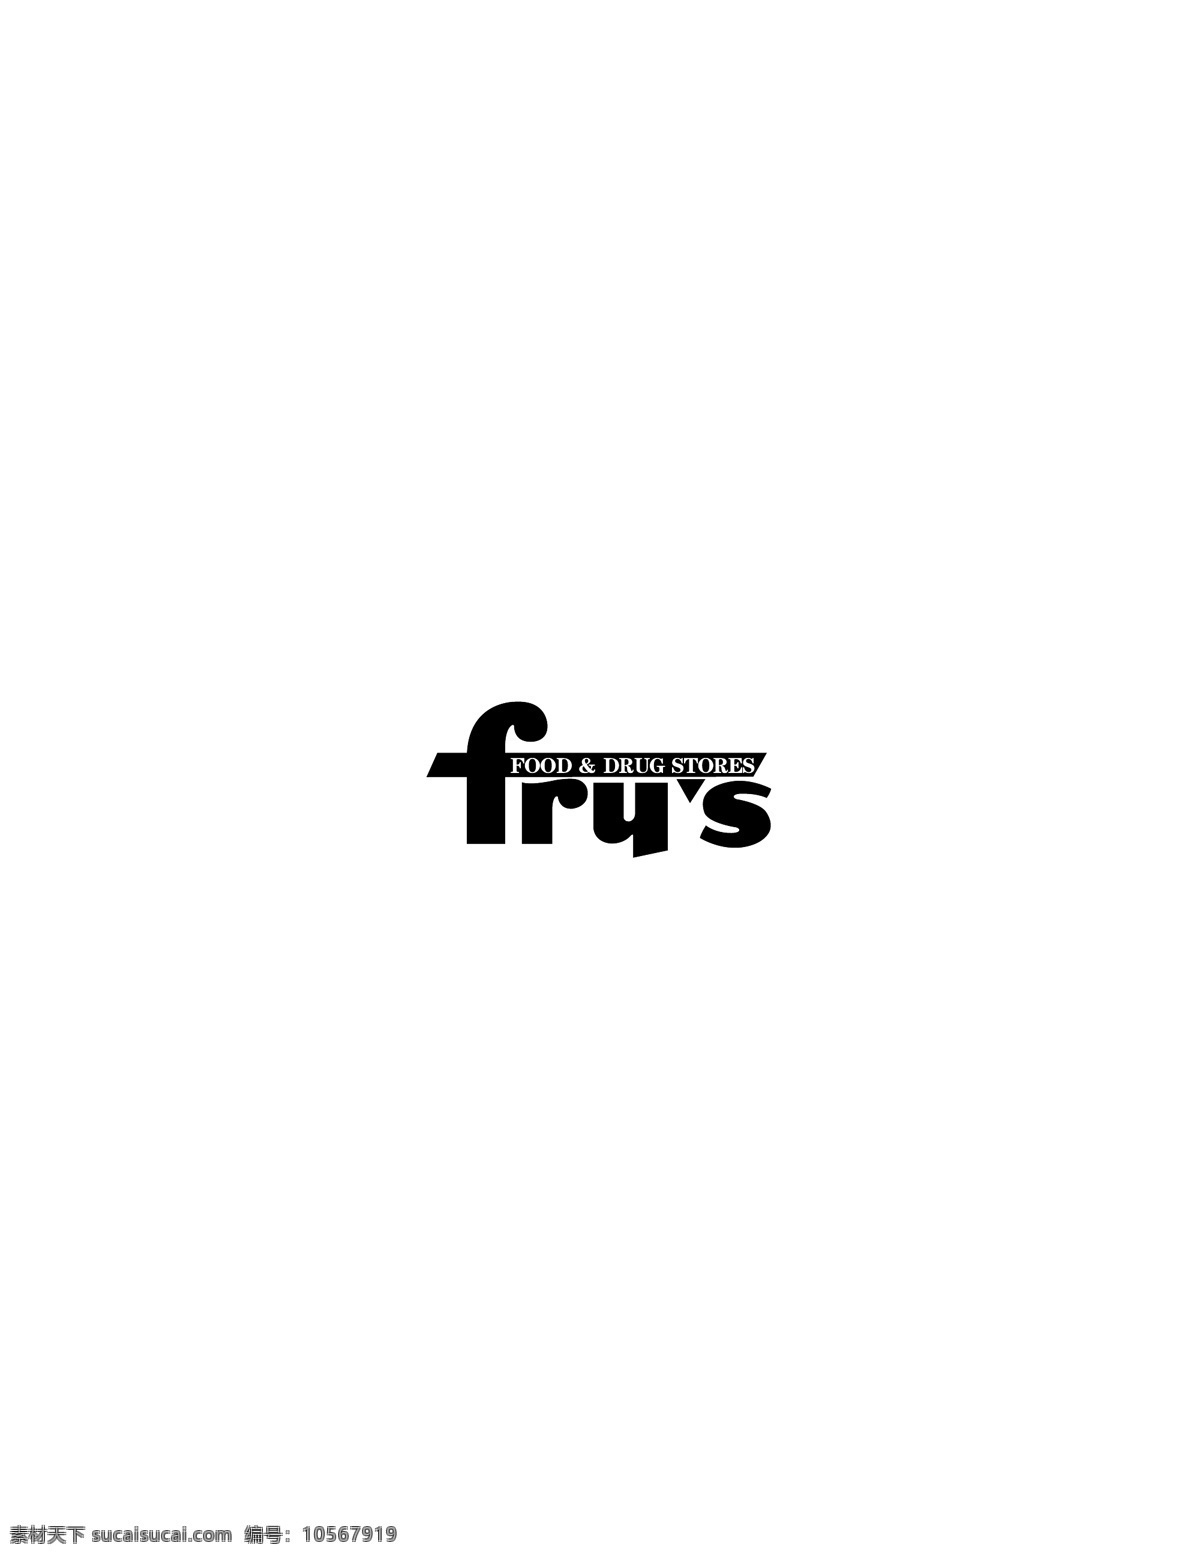 frys logo大全 logo 设计欣赏 商业矢量 矢量下载 名牌 饮料 标志 标志设计 欣赏 网页矢量 矢量图 其他矢量图